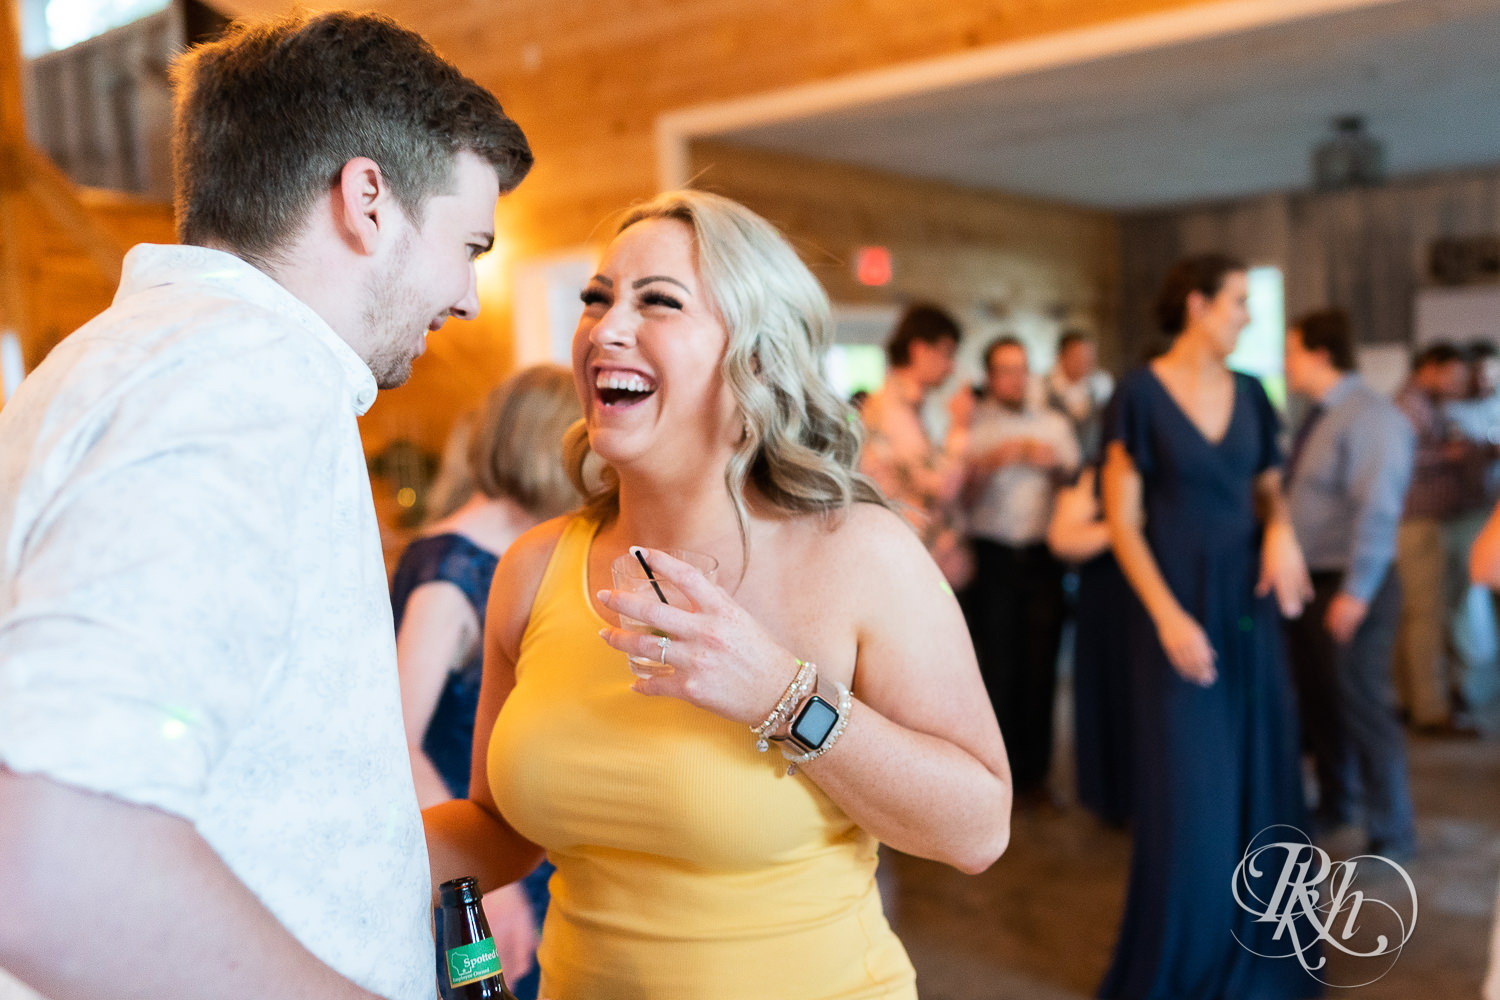 Guests dance at wedding reception at Barn at Mirror Lake in Mondovi, Wisconsin.